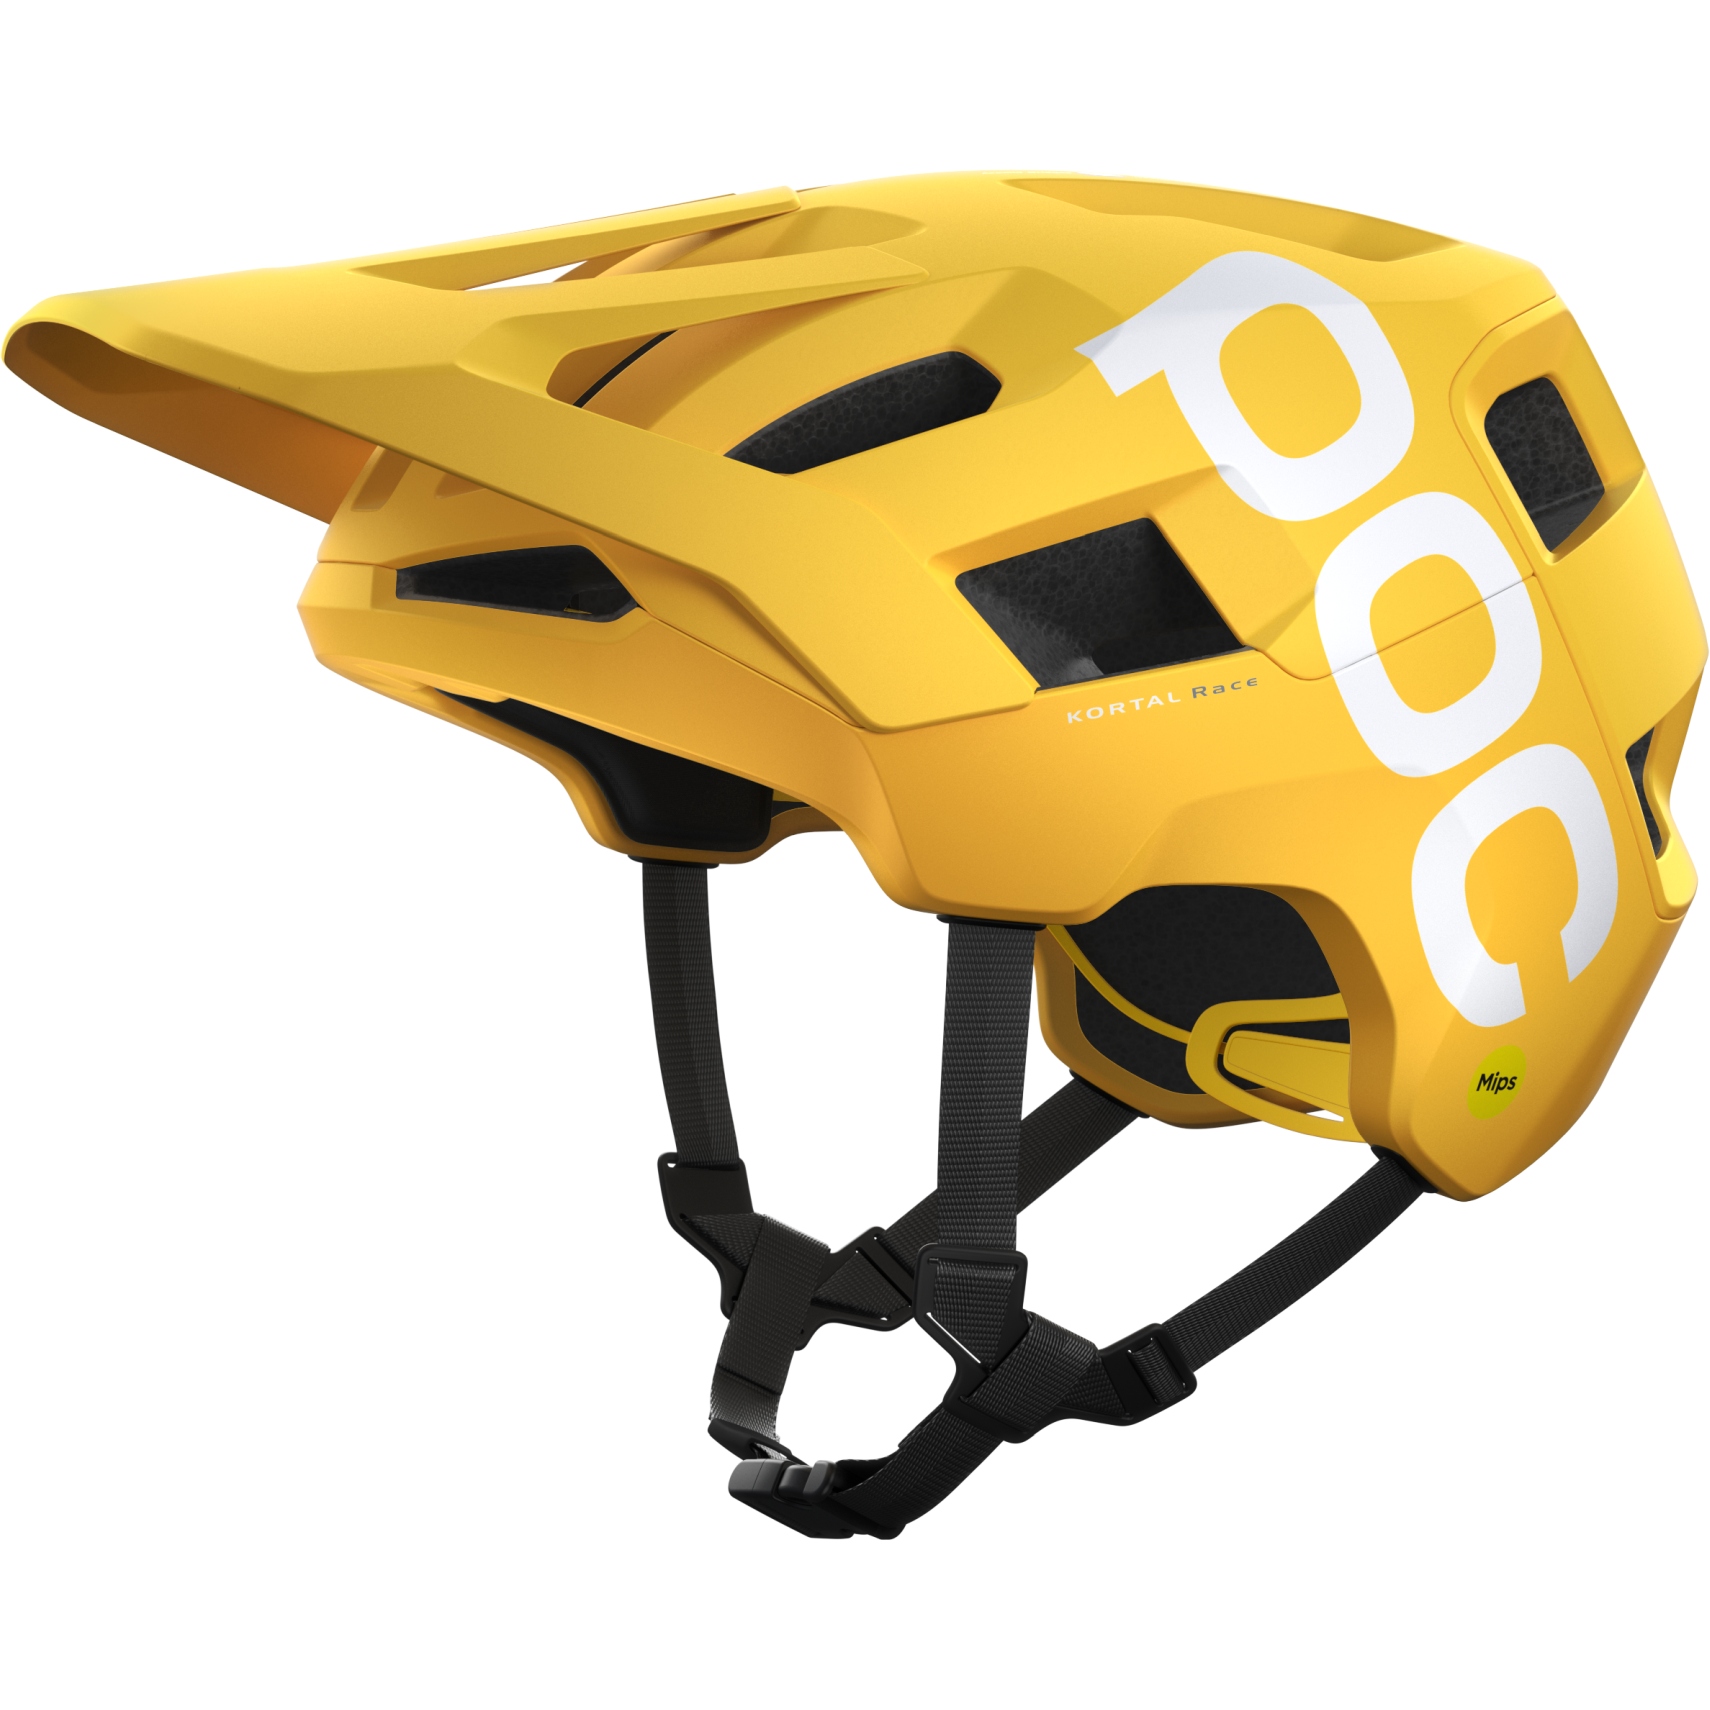 Produktbild von POC Kortal Race MIPS Helm - 1331 Aventurine Yellow Matt